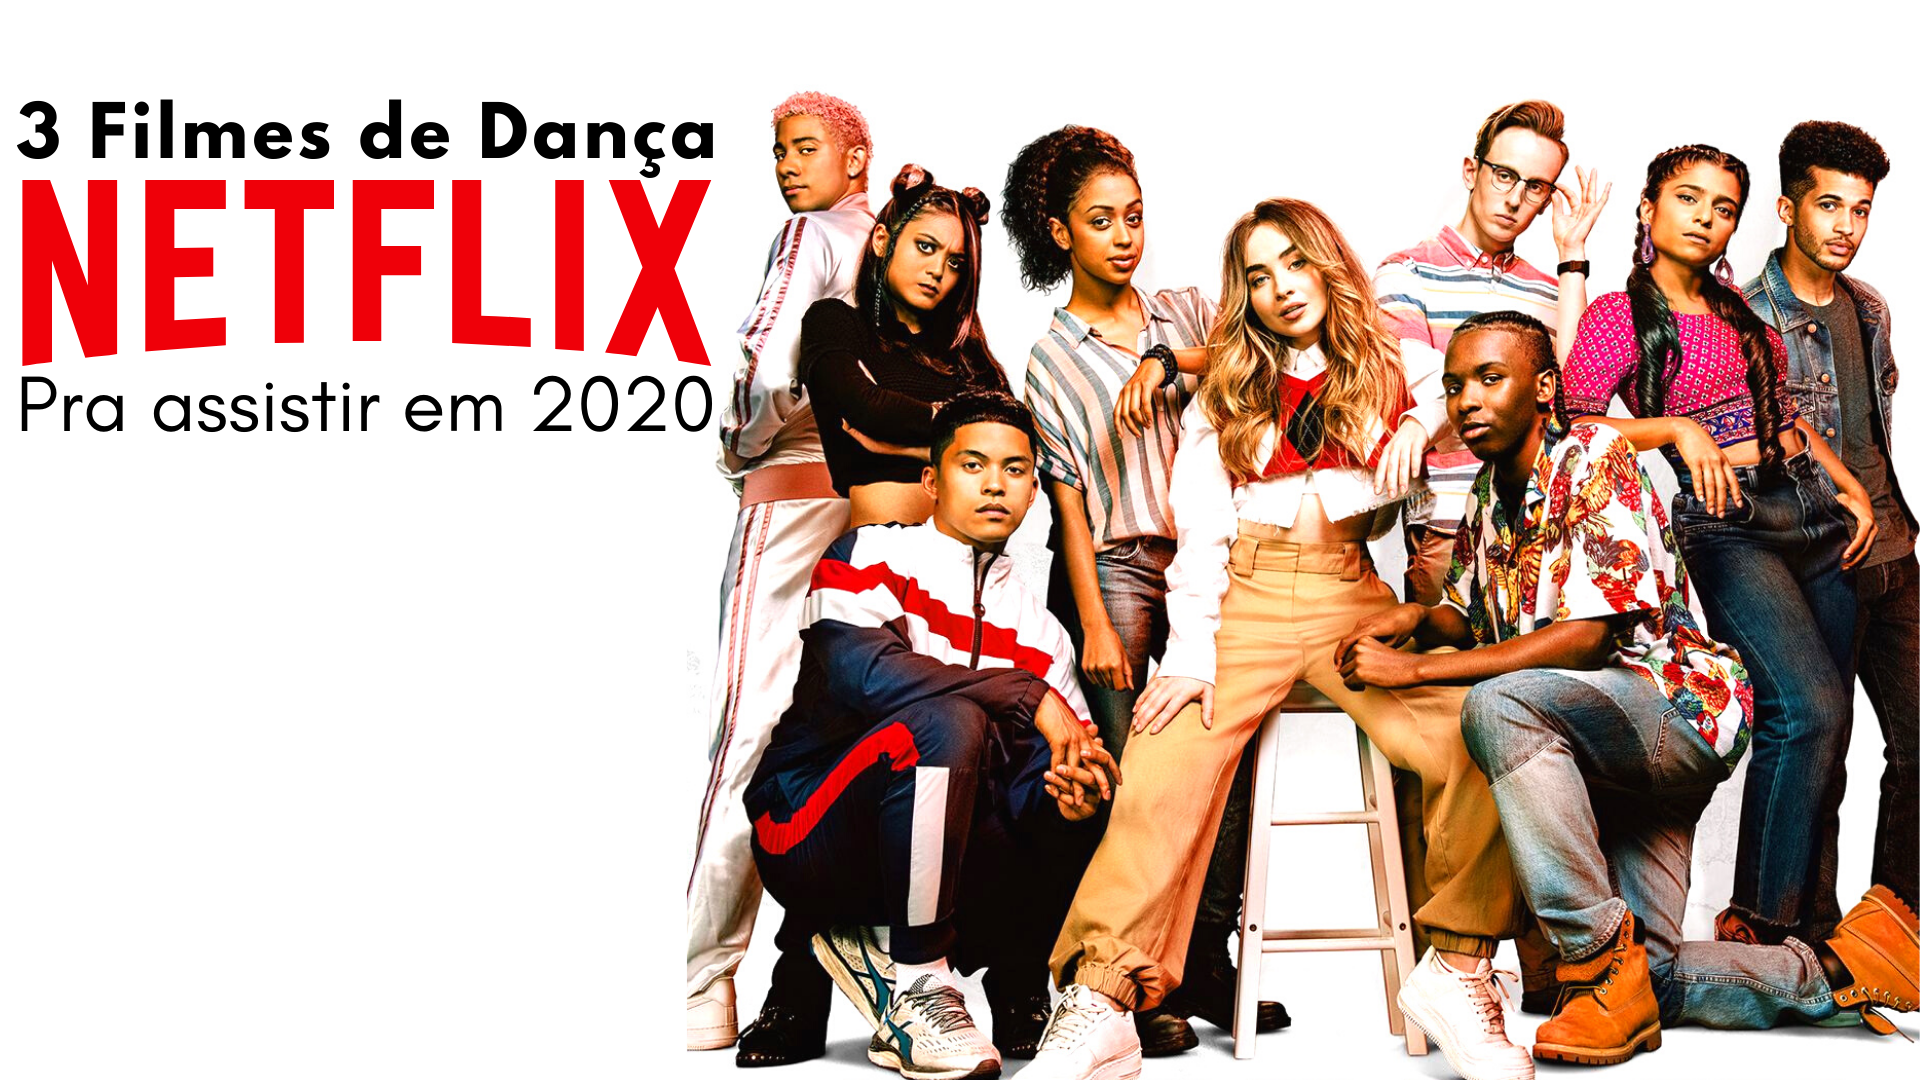 Filmes de Dança na Netflix | Saltare Danças